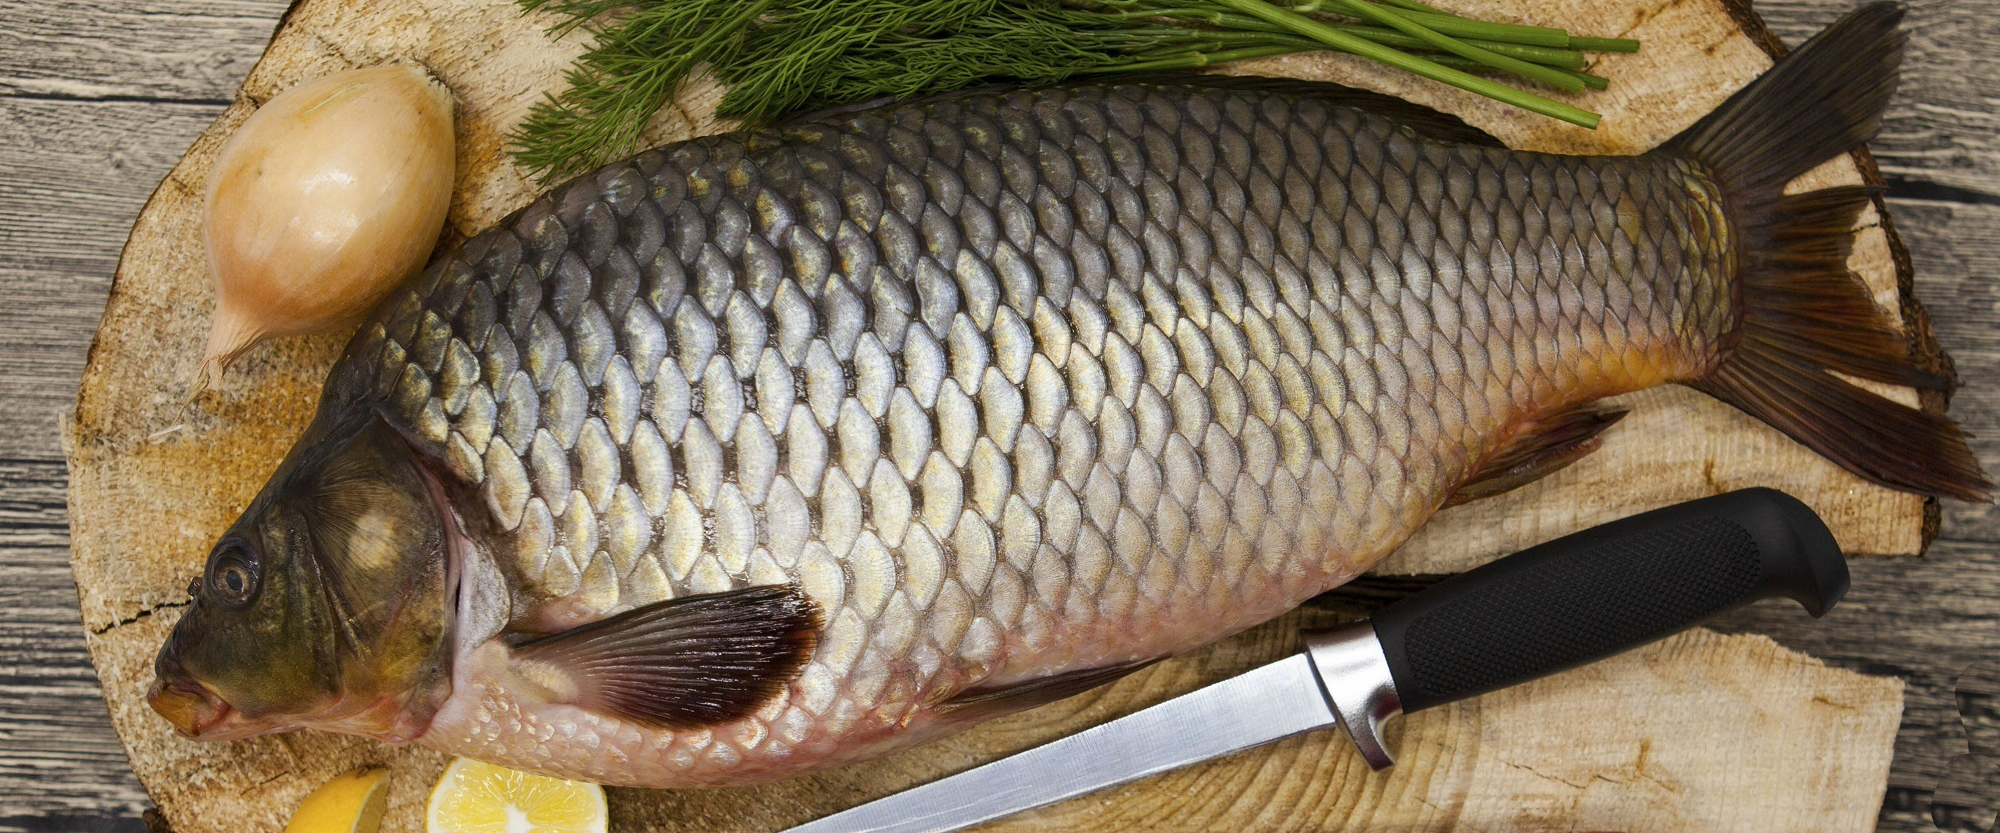 Живая рыба: Натурально и вкусно